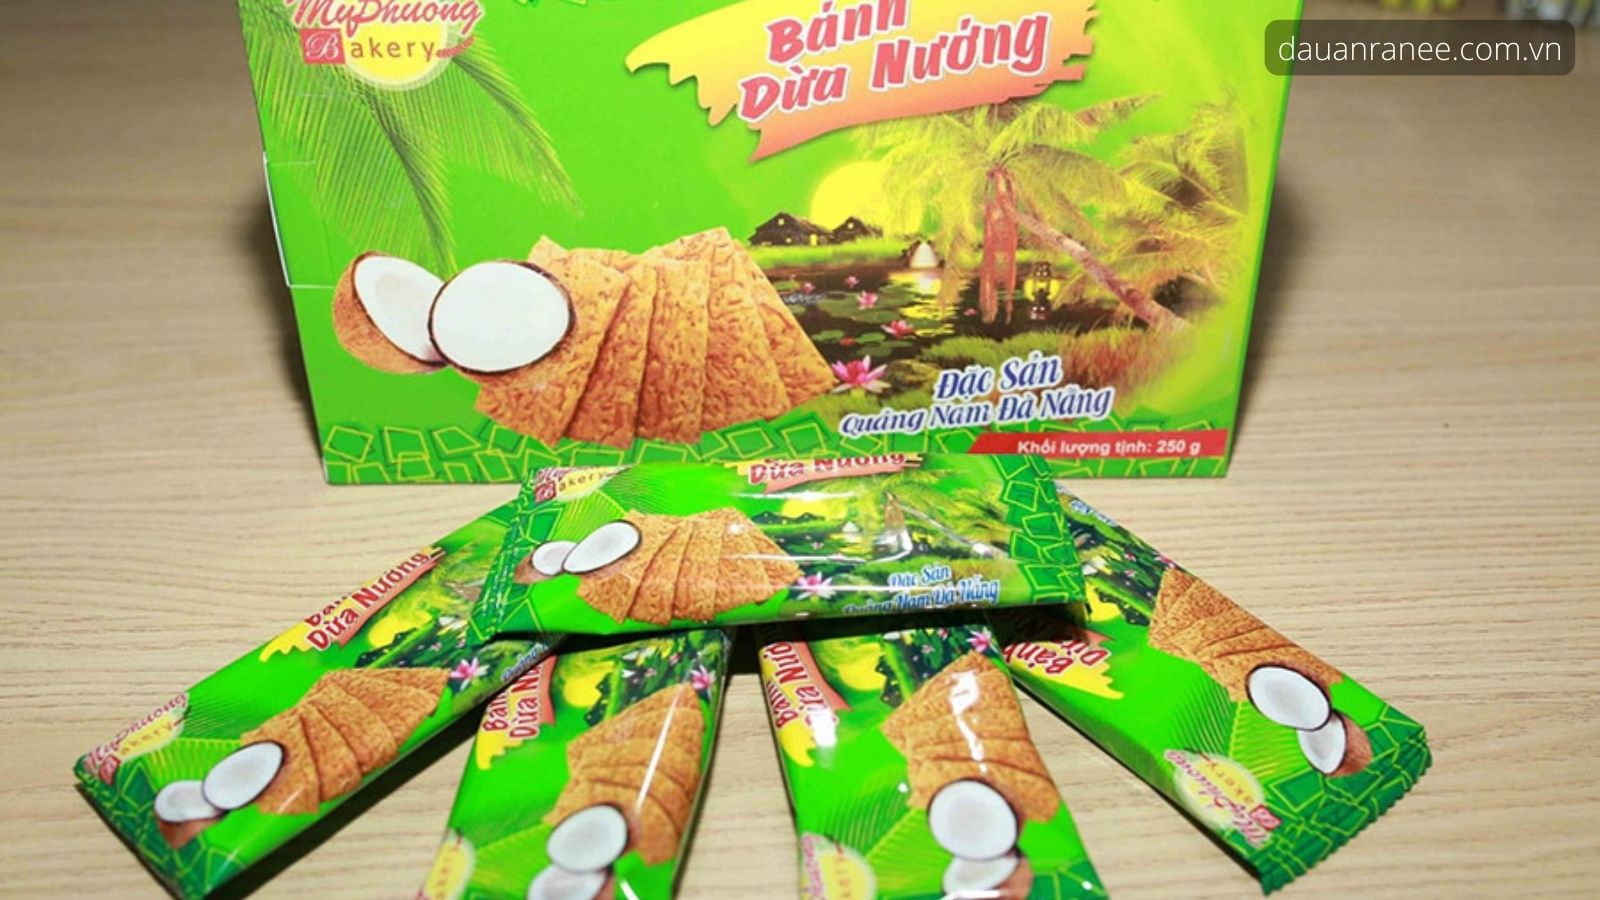 Bánh dừa nướng Mỹ Phương Food – Bánh dừa ngon Đà Nẵng